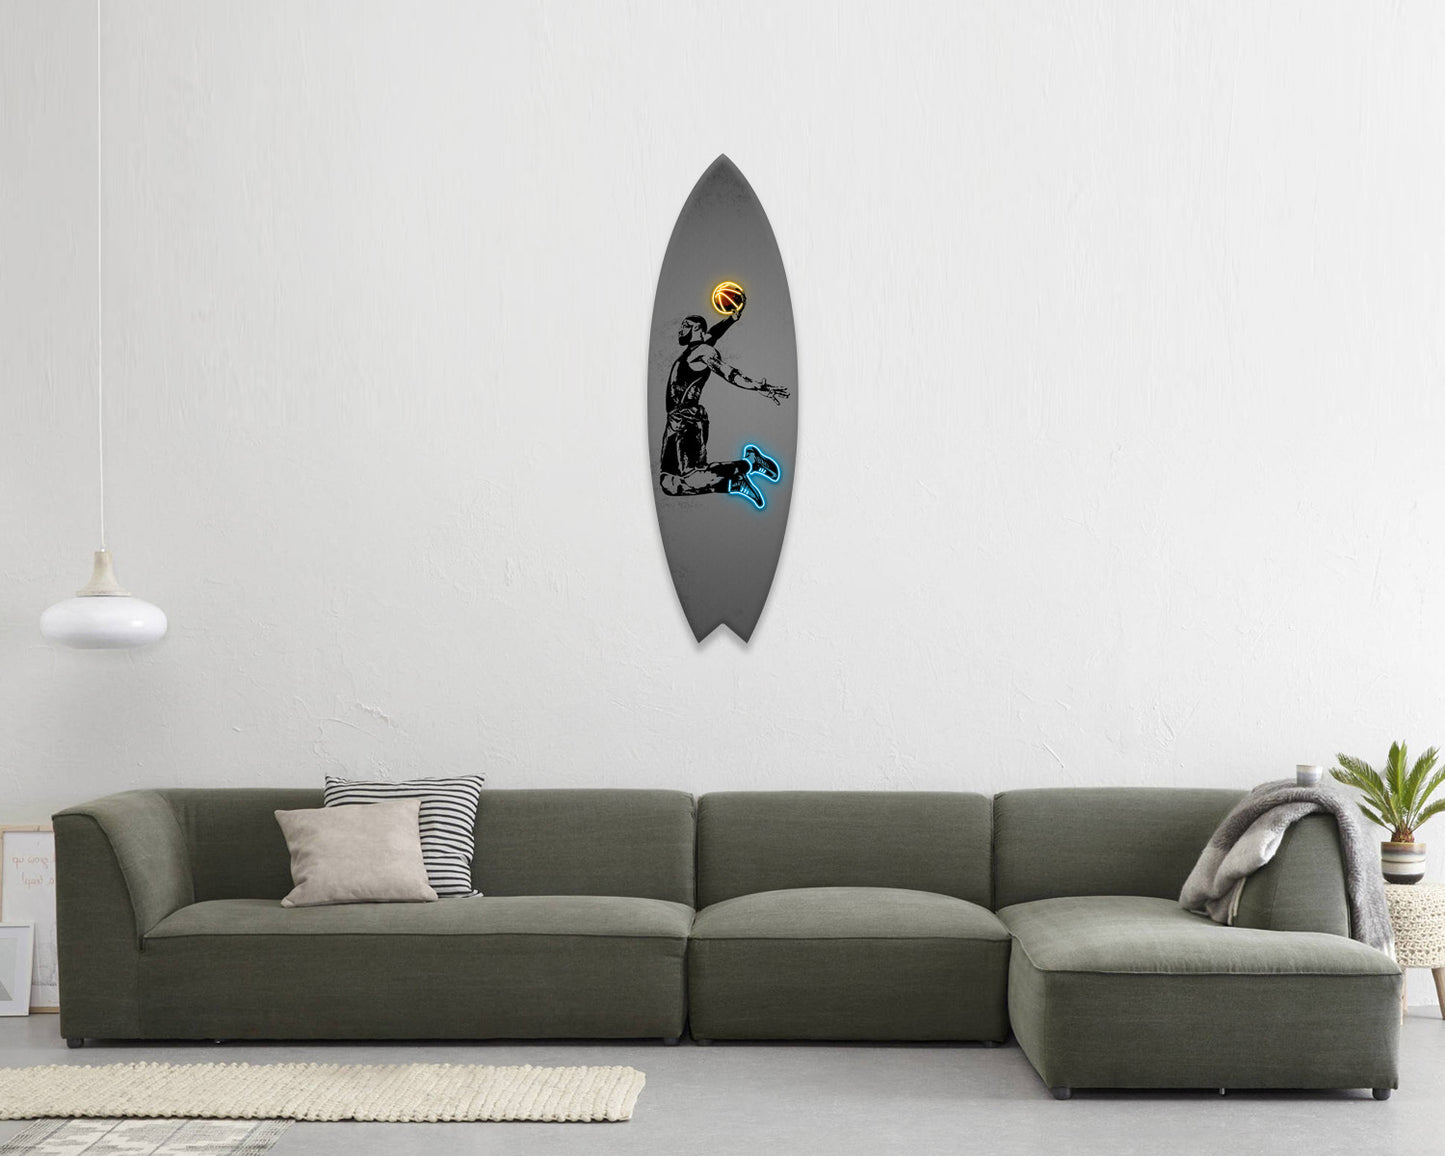 Lebron James Acrylic Surfboard Wall Art 